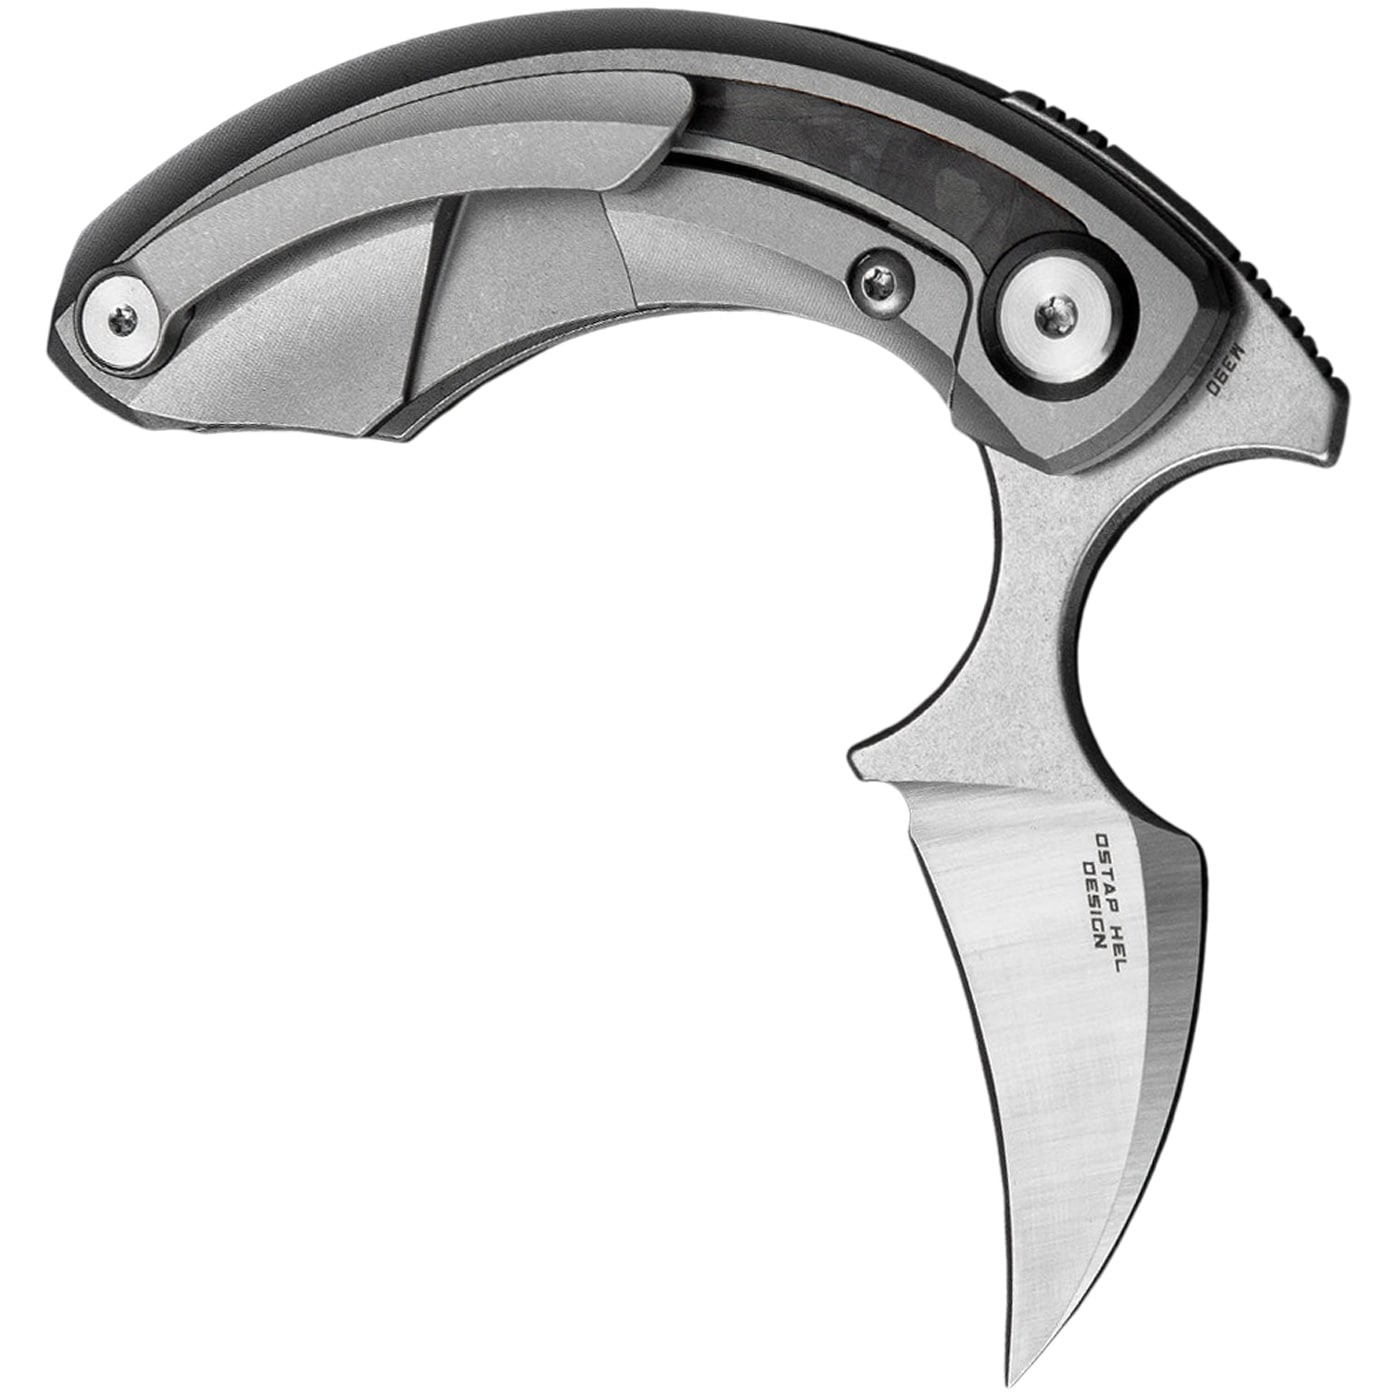 Nóż składany Bestech Knives Strelit - Satin/Grey Titanium Black Red Marble Carbon Fiber